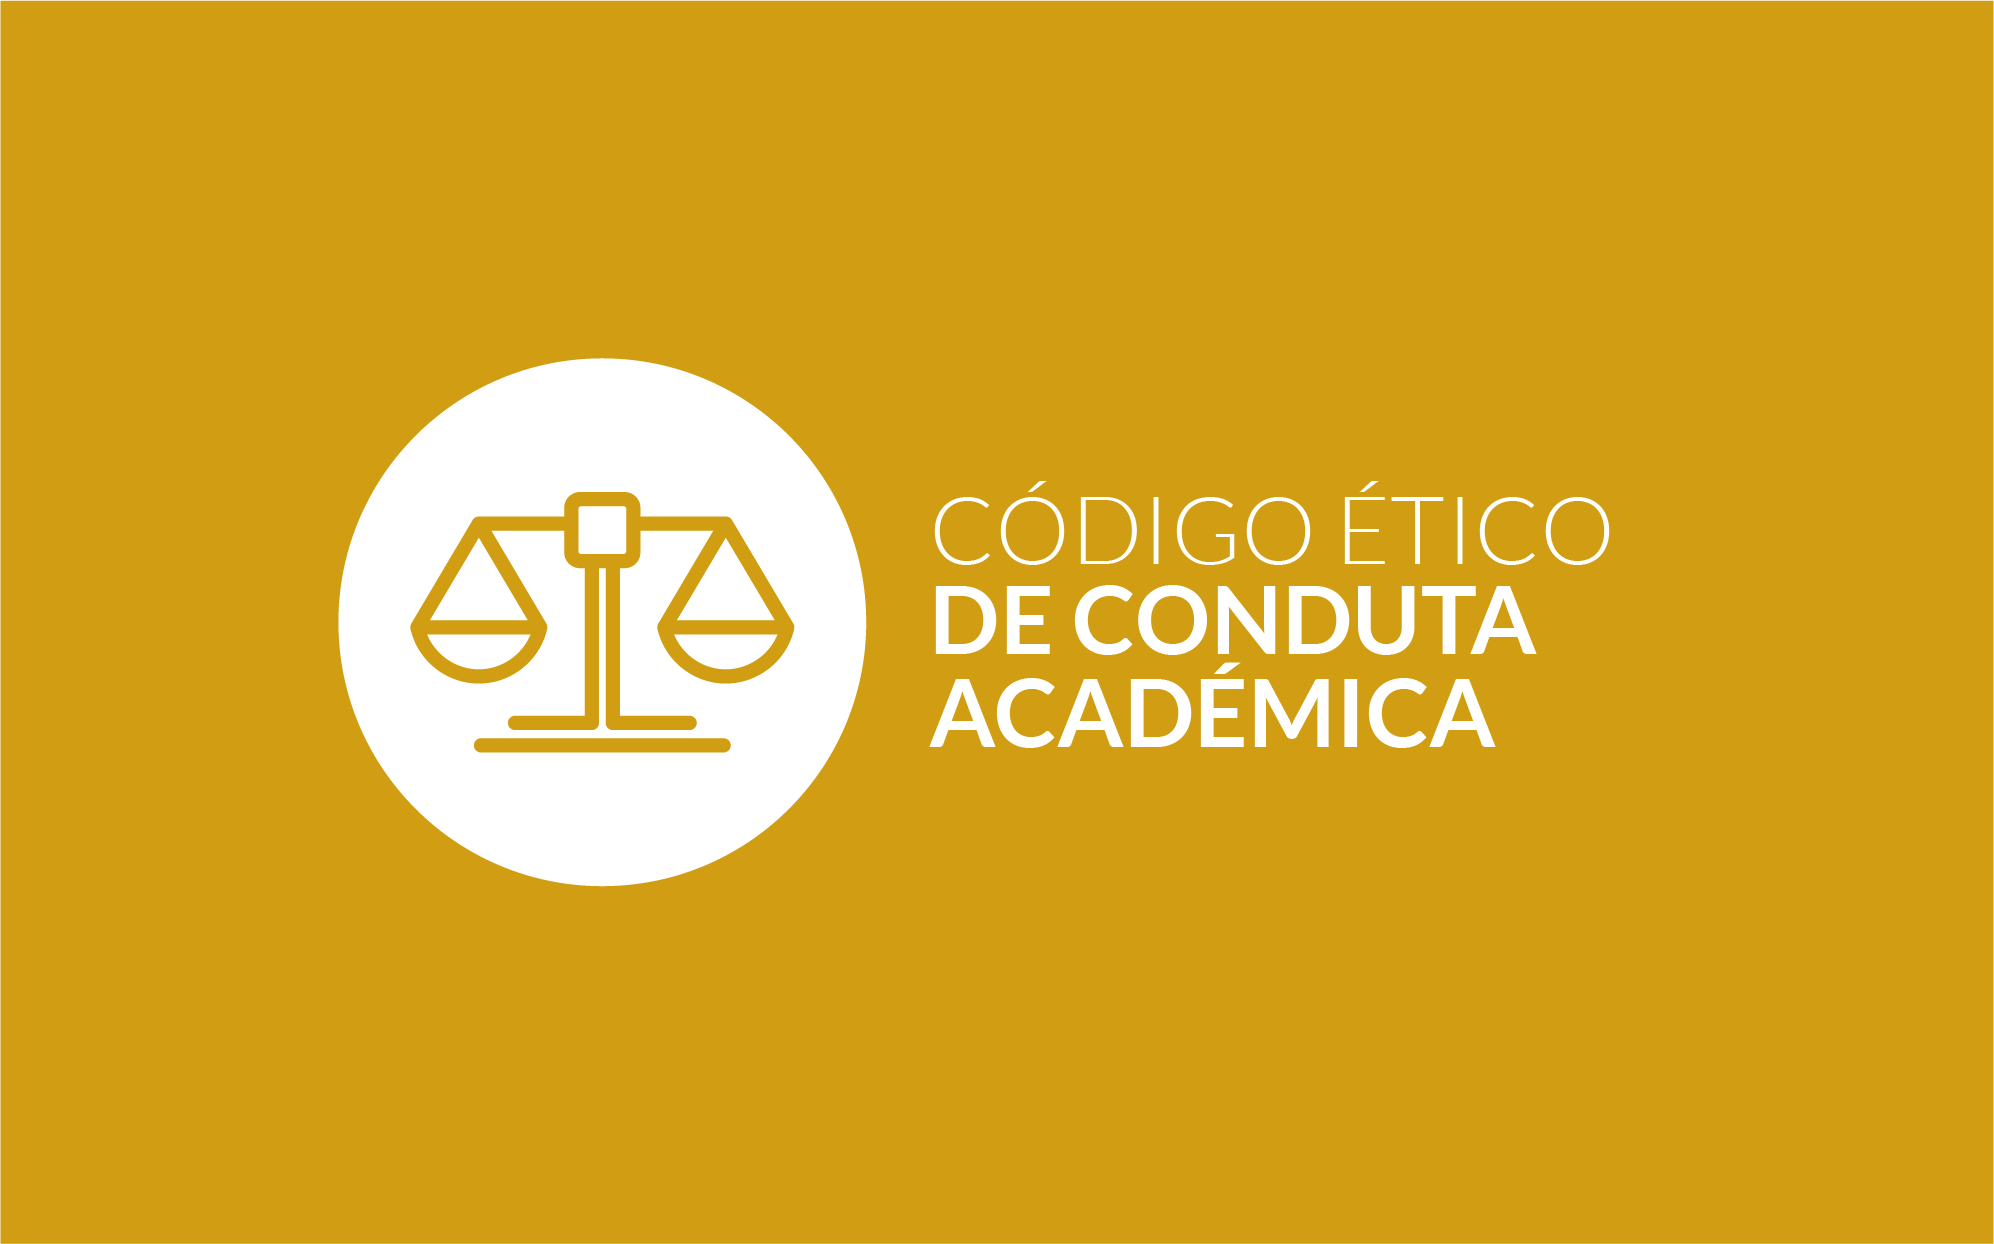 Código Ético de Conduta Académica